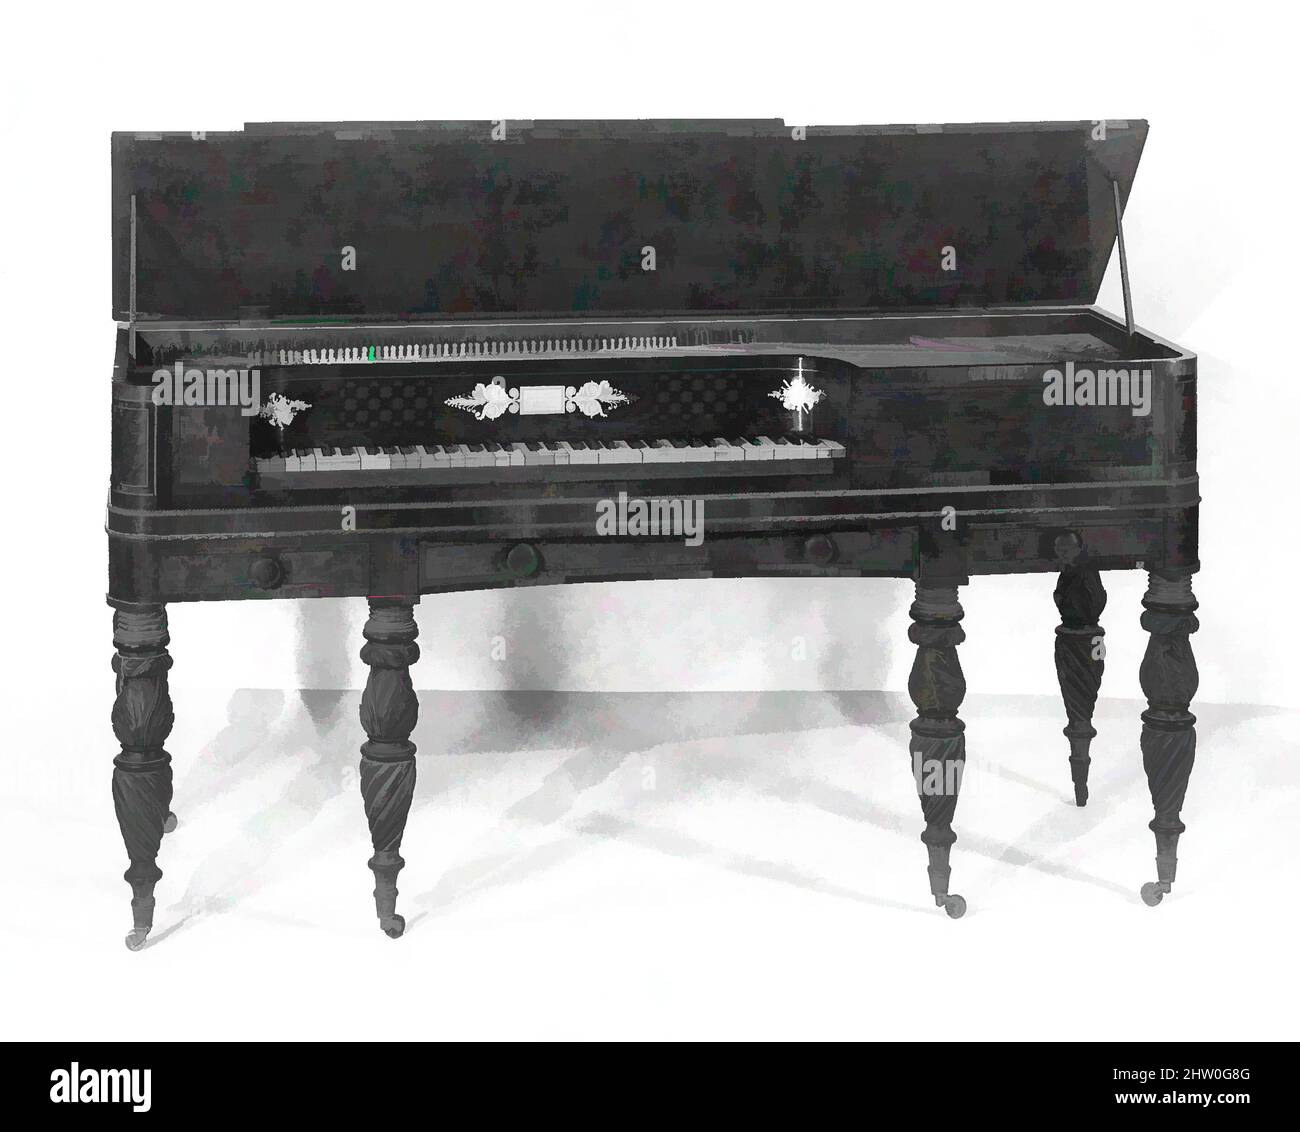 Art inspiré par Square Piano, 1822–27, New York, New York, États-Unis, Américain, divers matériaux, L. de boîtier (perpendiculaire au clavier, à l'exclusion des boutons de tiroir): 63 cm (24-7/8 in.); W. (parallèle au clavier): 172,7 (68 in.); D. de boîtier (sans couvercle): 34 cm (13-3/8 in.); Total H, oeuvres classiques modernisées par Artotop avec un peu de modernité. Formes, couleur et valeur, impact visuel accrocheur sur l'art émotions par la liberté d'œuvres d'art d'une manière contemporaine. Un message intemporel qui cherche une nouvelle direction créative. Artistes qui se tournent vers le support numérique et créent le NFT Artotop Banque D'Images